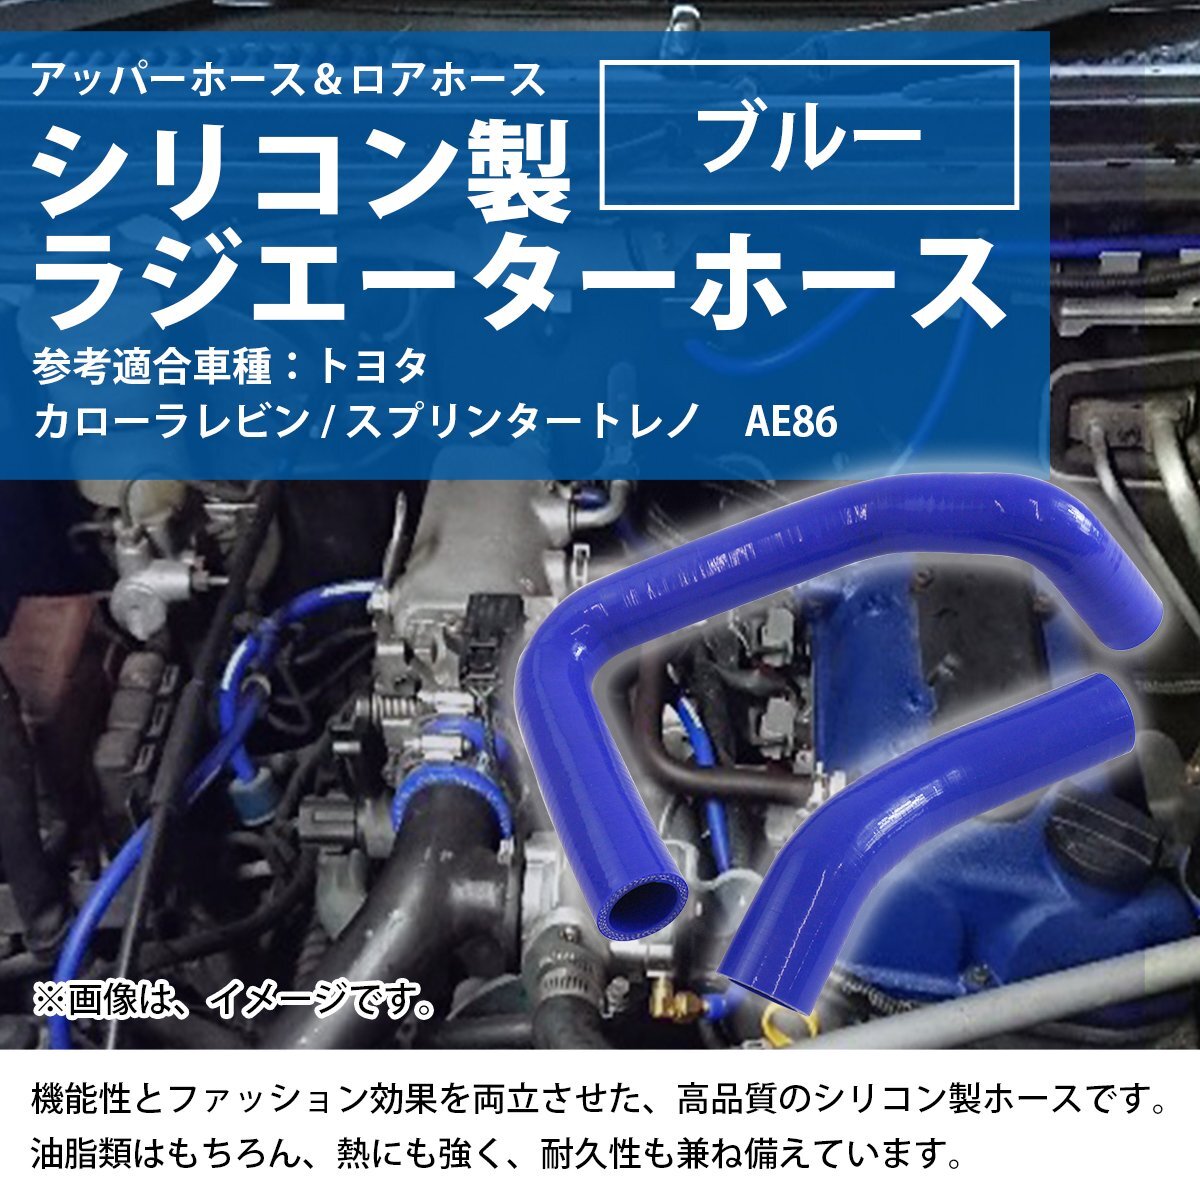 【新品即納】 トヨタ AE86 ハチロク トレノ ラジエーターホース 2P ブルー 耐熱 耐久 4層シリコンホース ラジエター アッパー ロア ホース_shos-a-005-bl-01-a